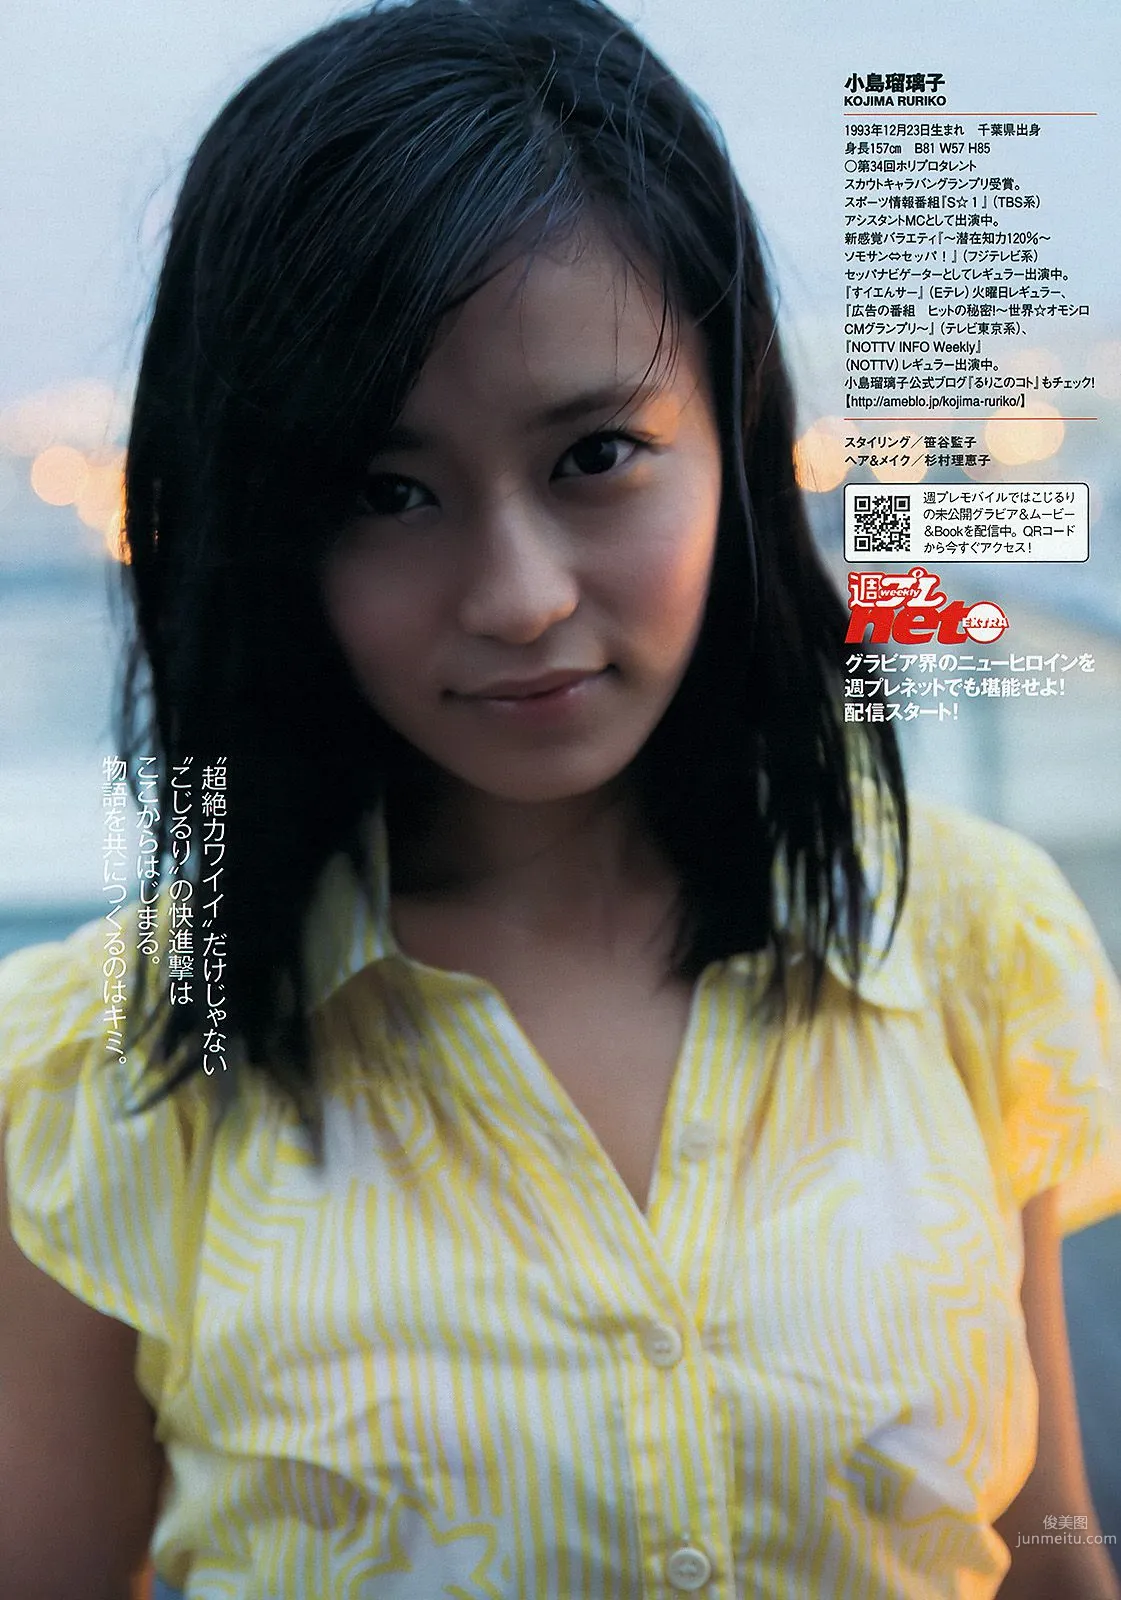 小島瑠璃子 岩﨑名美 HKT48 相楽樹 壇蜜 内田理央 [Weekly Playboy] 2013年No.13 写真杂志6